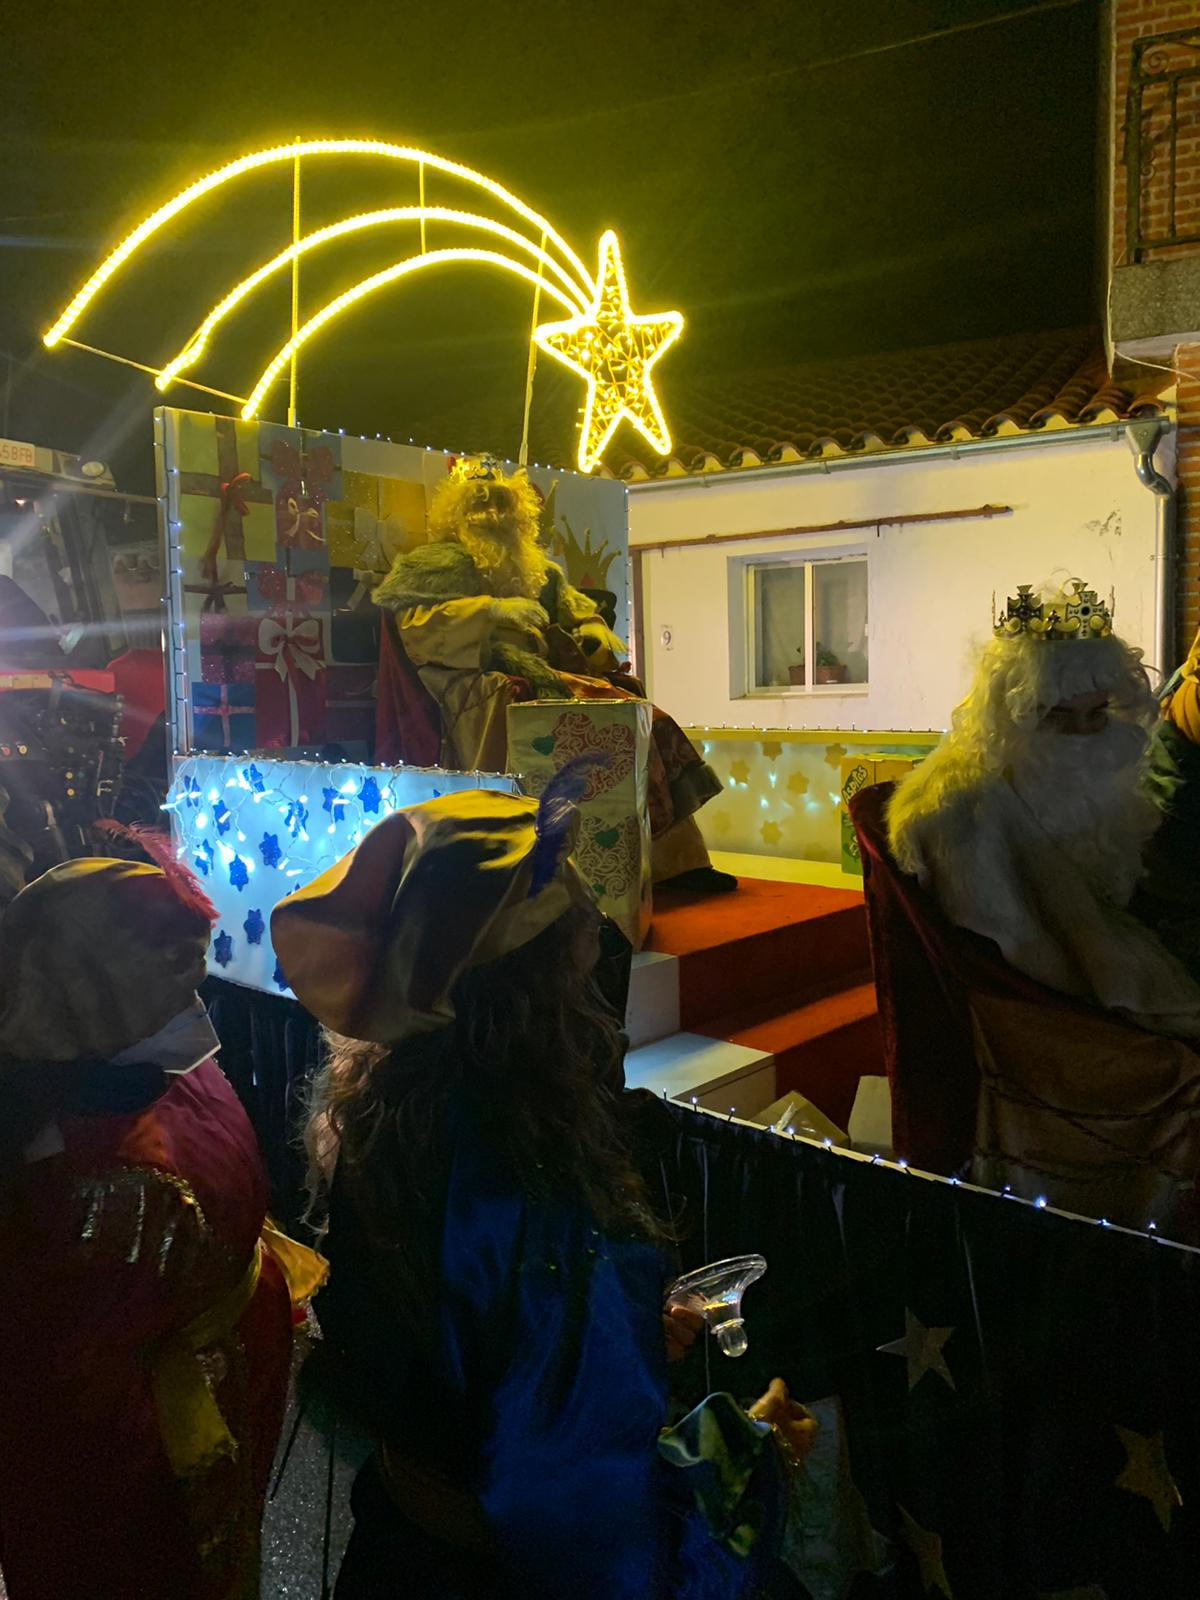 Foto 3 - Alegría tras la lluvia para recibir a los Reyes Magos en una animada Cabalgata en Villoria